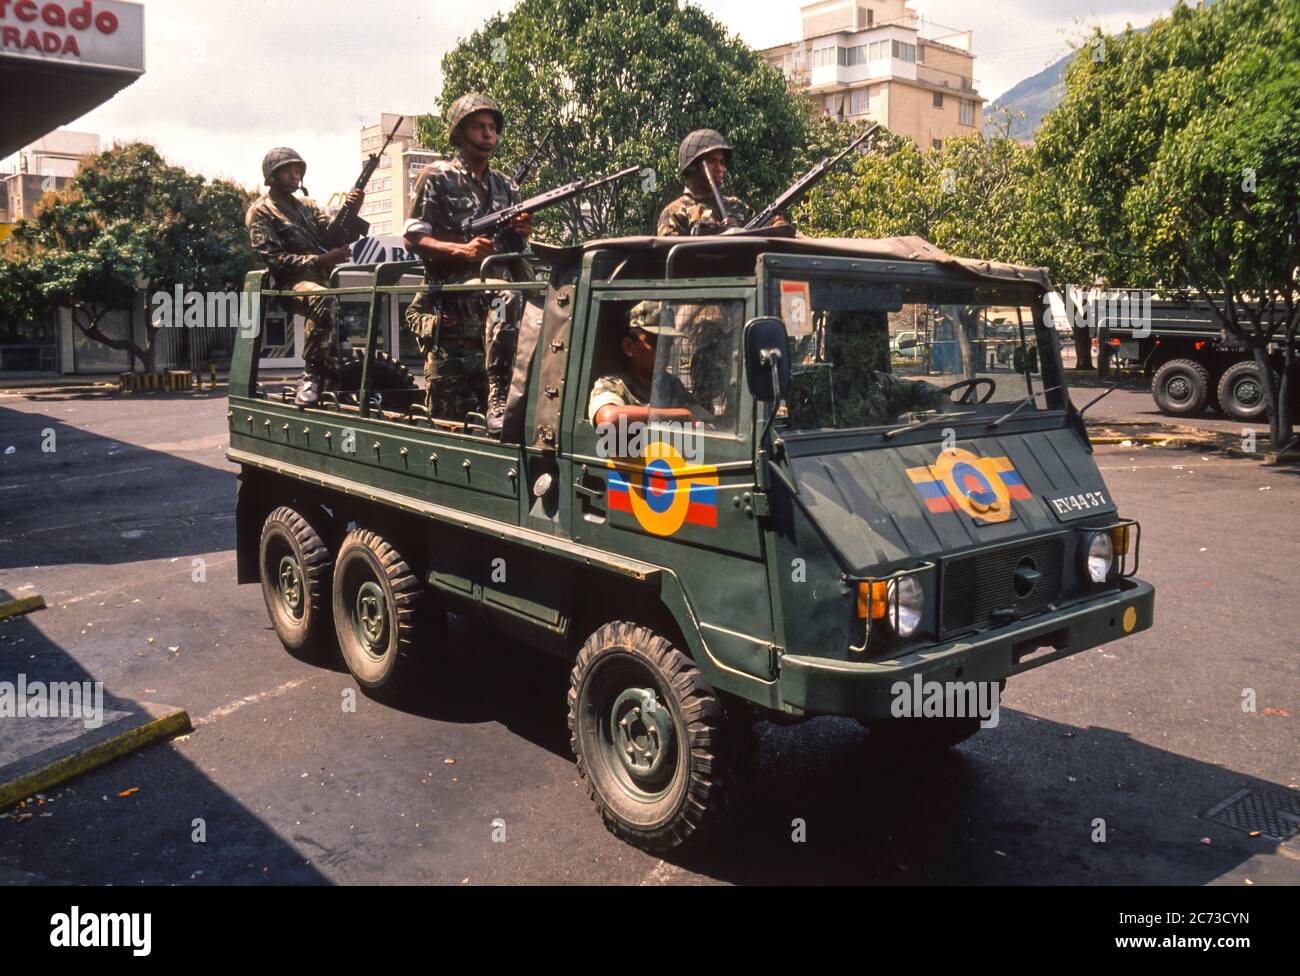 CARACAS, VENEZUELA, MARCH1989 - soldati in veicoli armati in strada durante lo stato di emergenza dopo proteste, rivolte e saccheggi a Caracas, conosciuto come il Caracazo. Foto Stock